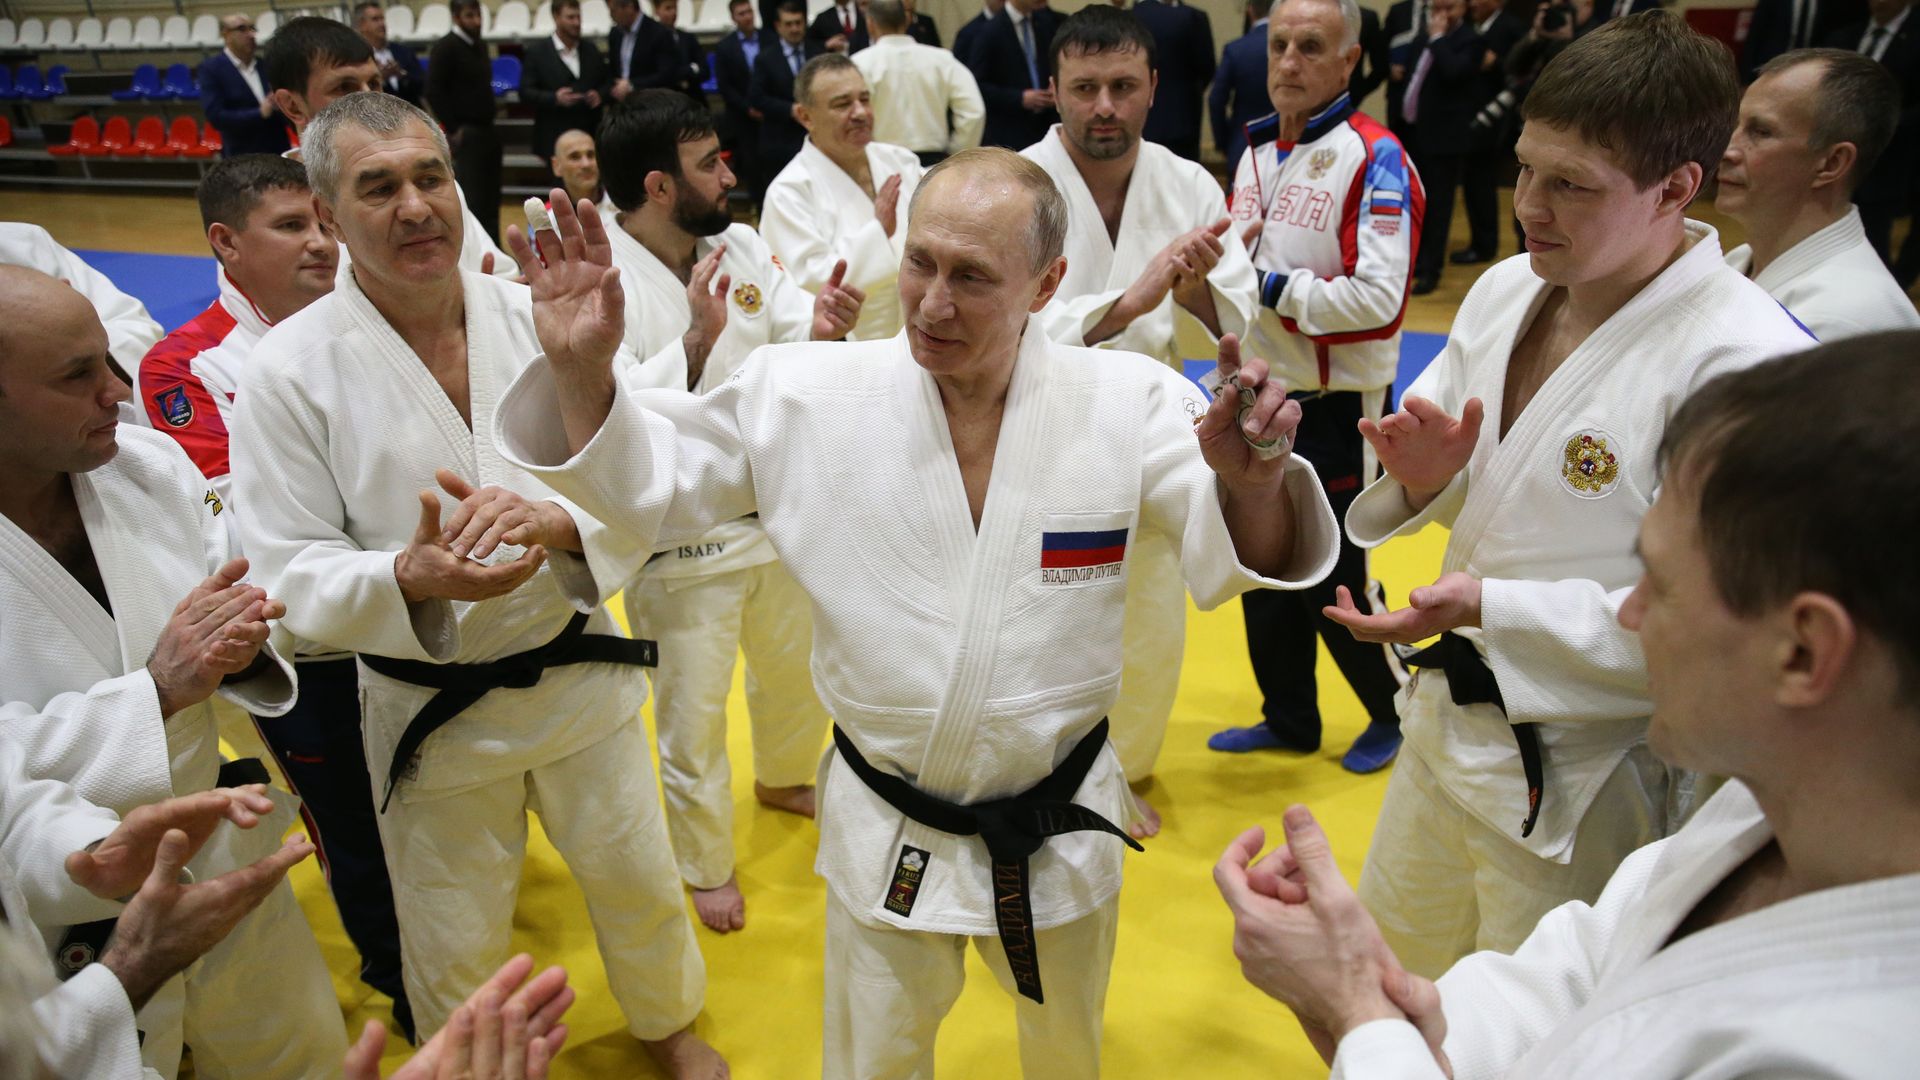 Putin surrounded by judo athletes